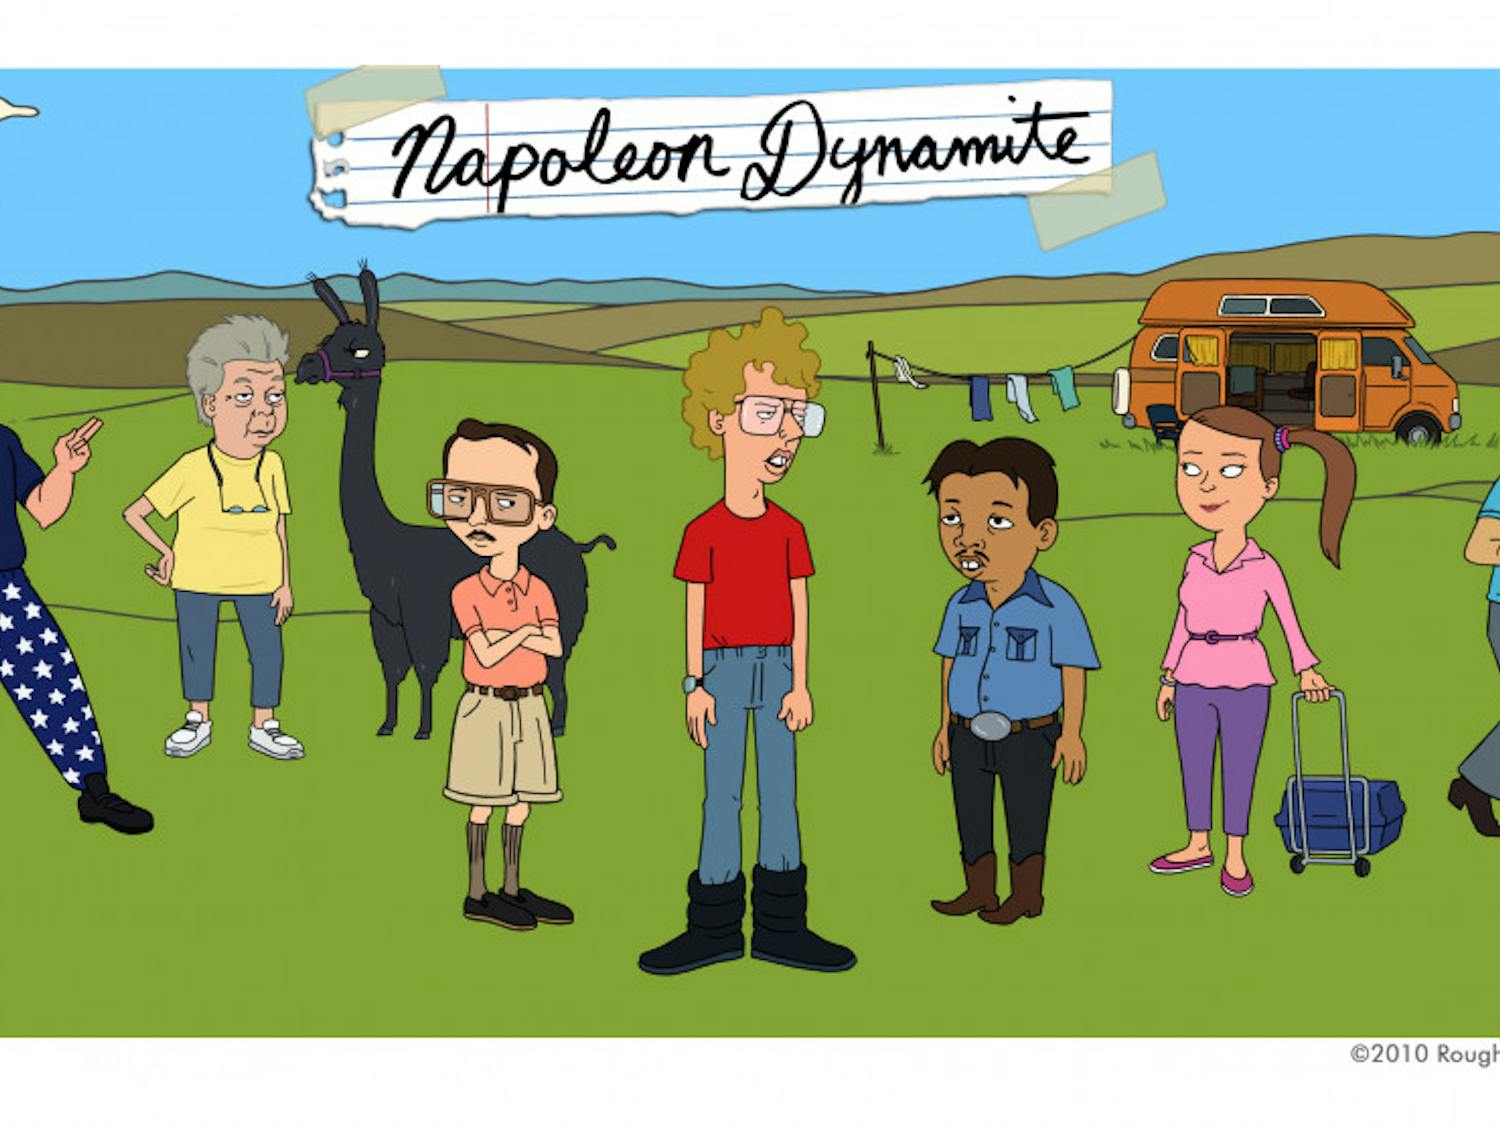 'Napoleon Dynamite'